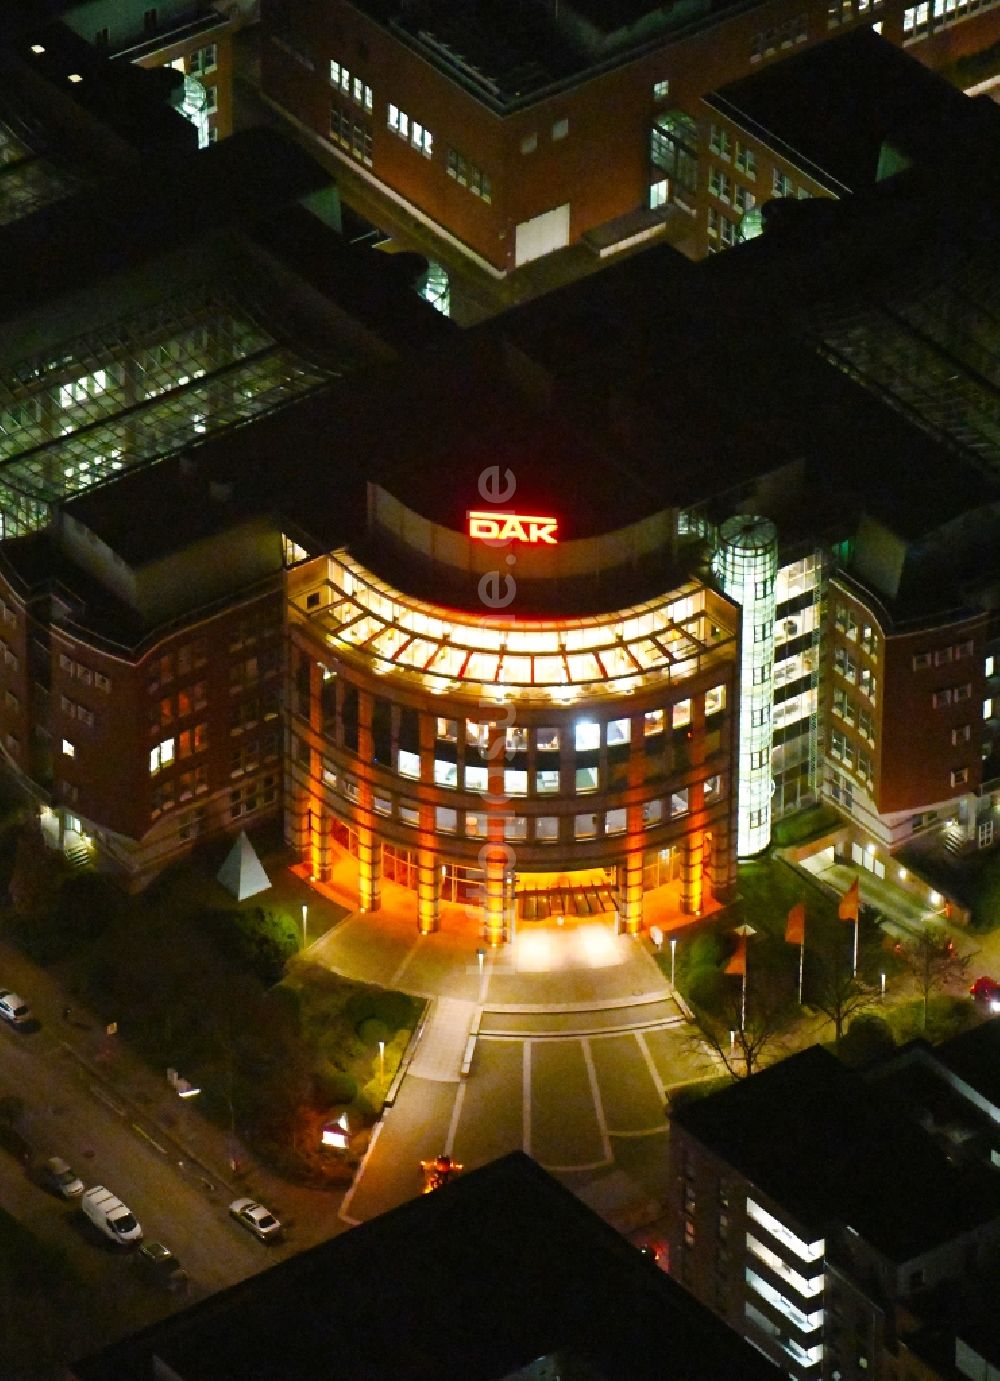 Hamburg bei Nacht von oben - Nachtluftbild Verwaltungsgebäude des Versicherungs- Unternehmens DAK-Gesundheit in Hamburg, Deutschland